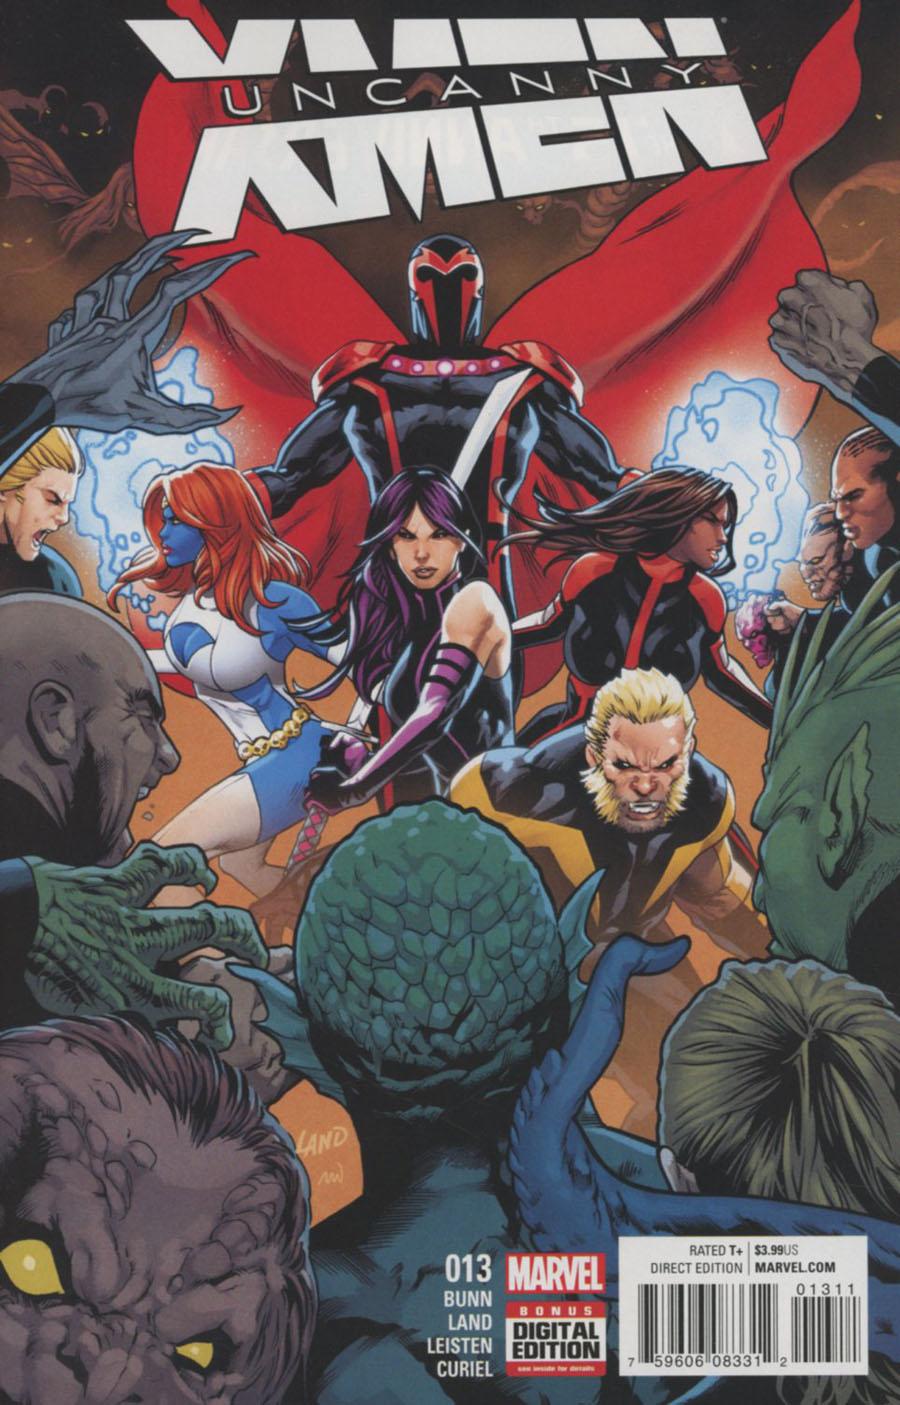 Uncanny X-Men Vol. 4 #13